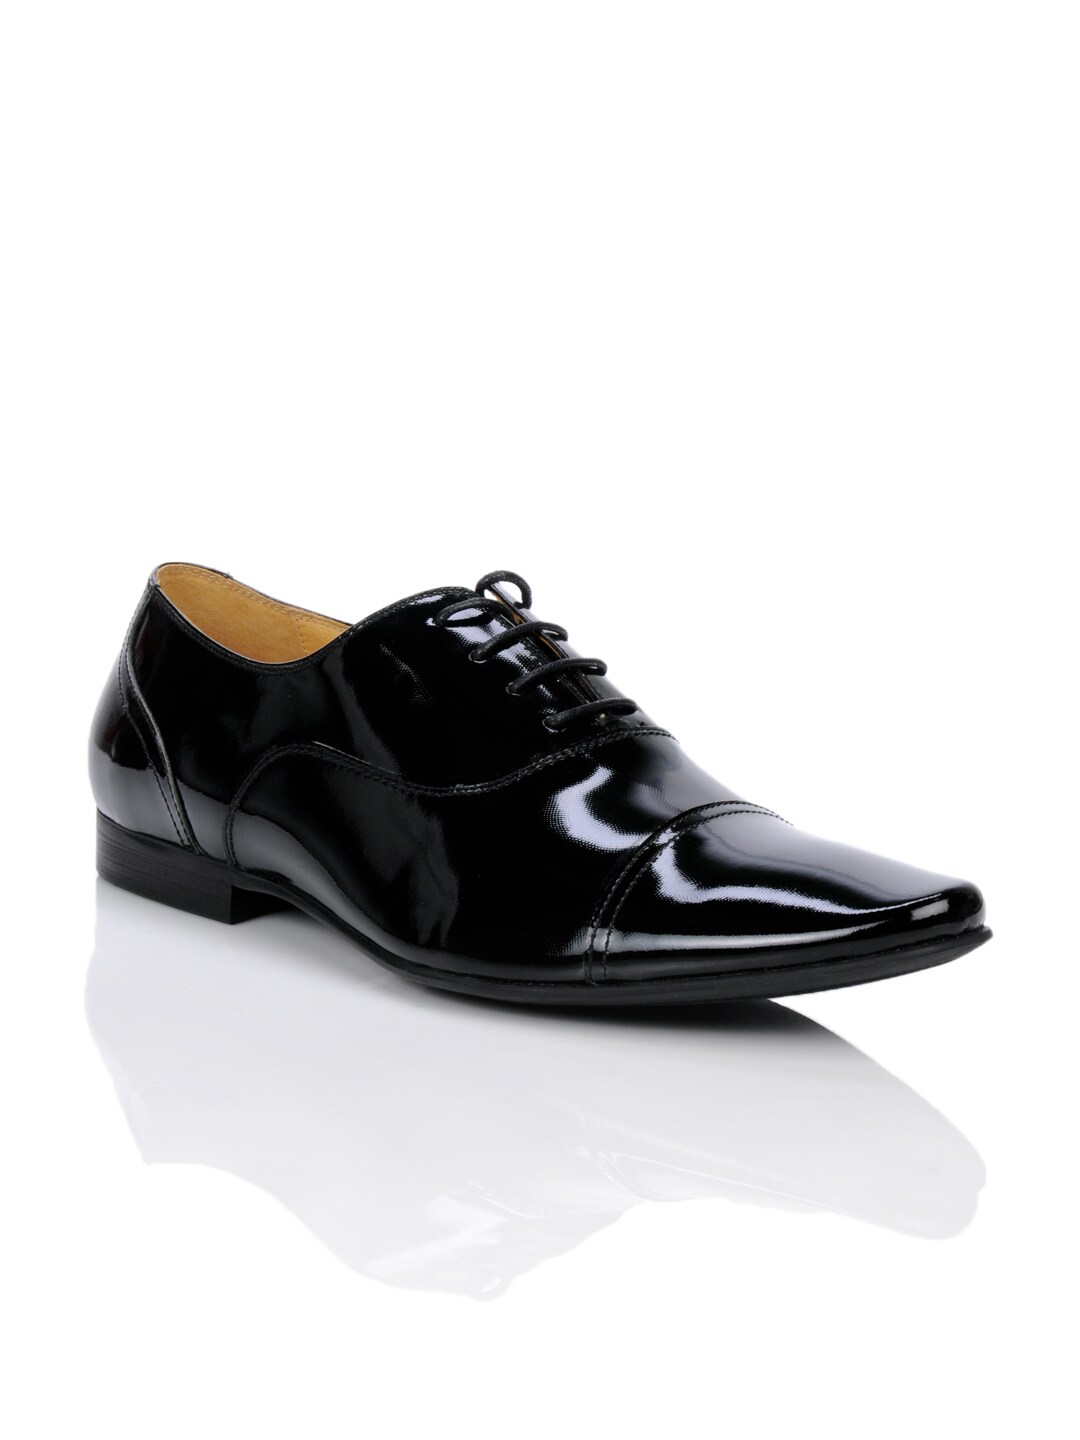 Homme Men Black Formal Oxford Shoes